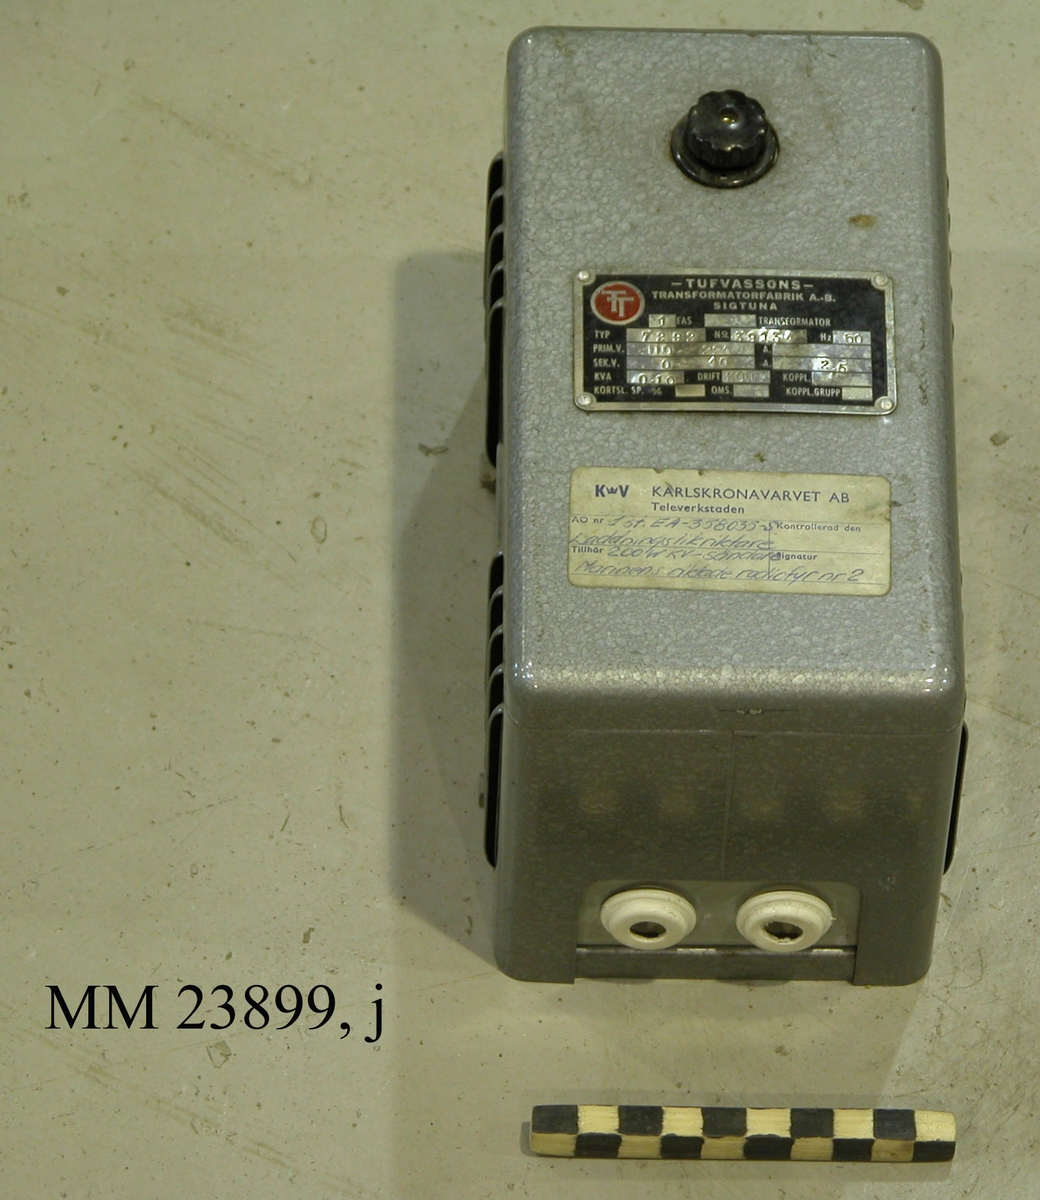 Silvergrå laddningsriktare typ EA-358035-S till Marinens riktade radiofyr. Märkt "TT" på båda sidorna. Metallplatta framtill. Klisterlapp framtill med texten: "Karlskronavarvet AB, Televerkstaden". Marinens riktade radiofyr består totalt av flera olika delar: sändare (antenn), filterstativ, sändarram, startbox, rambox, teckengivare, laddningslikritare, kontrollmottagare, likritare mm. Alltsammans drevs av ett portabelt elverk.